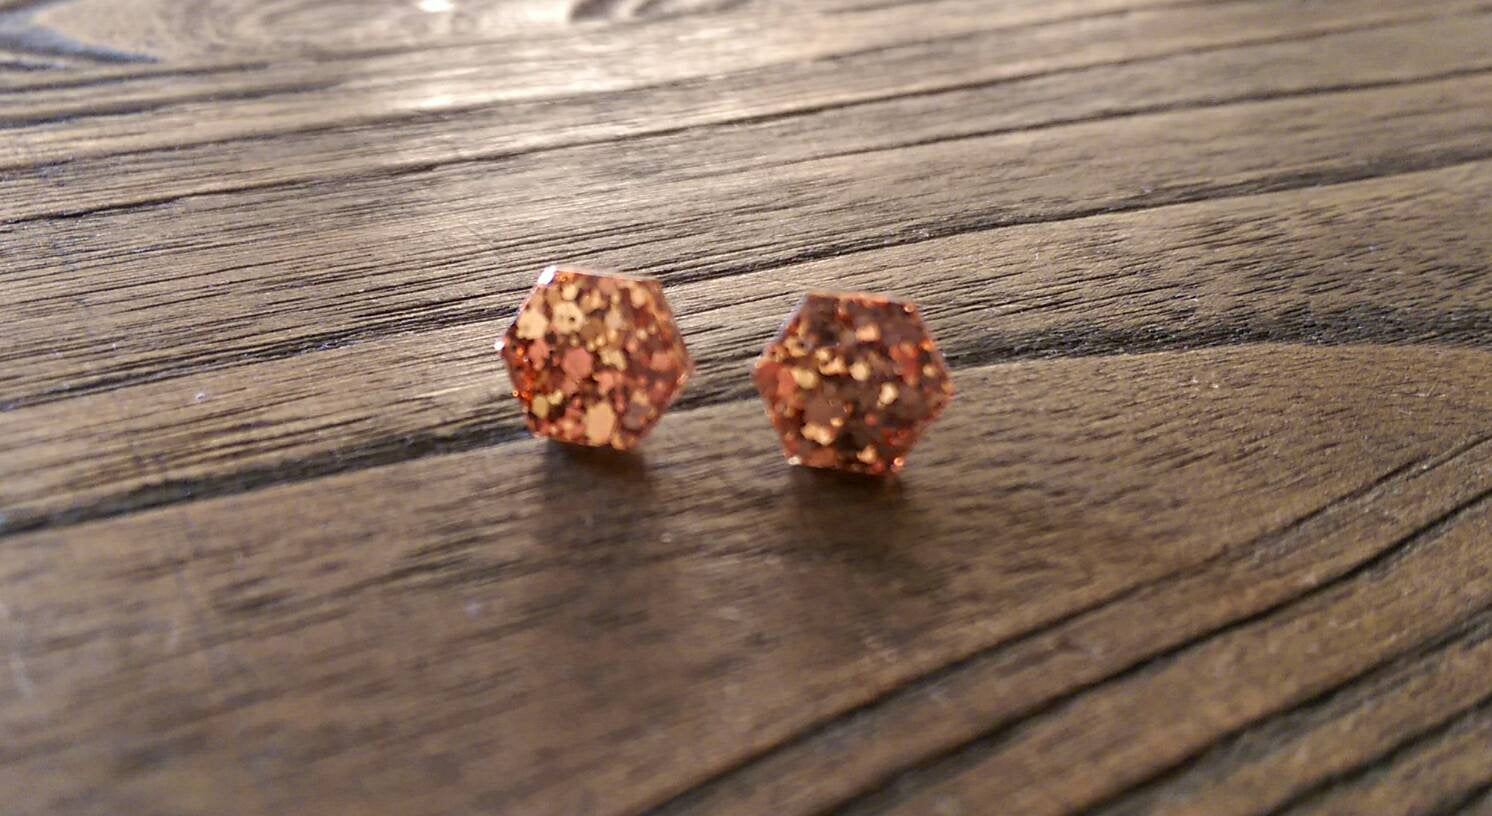 Hexagon Resin Stud Earrings, Rose Gold Copper Earrings. Stainless Steel Stud Earrings. 10mm - Silver and Resin Designs